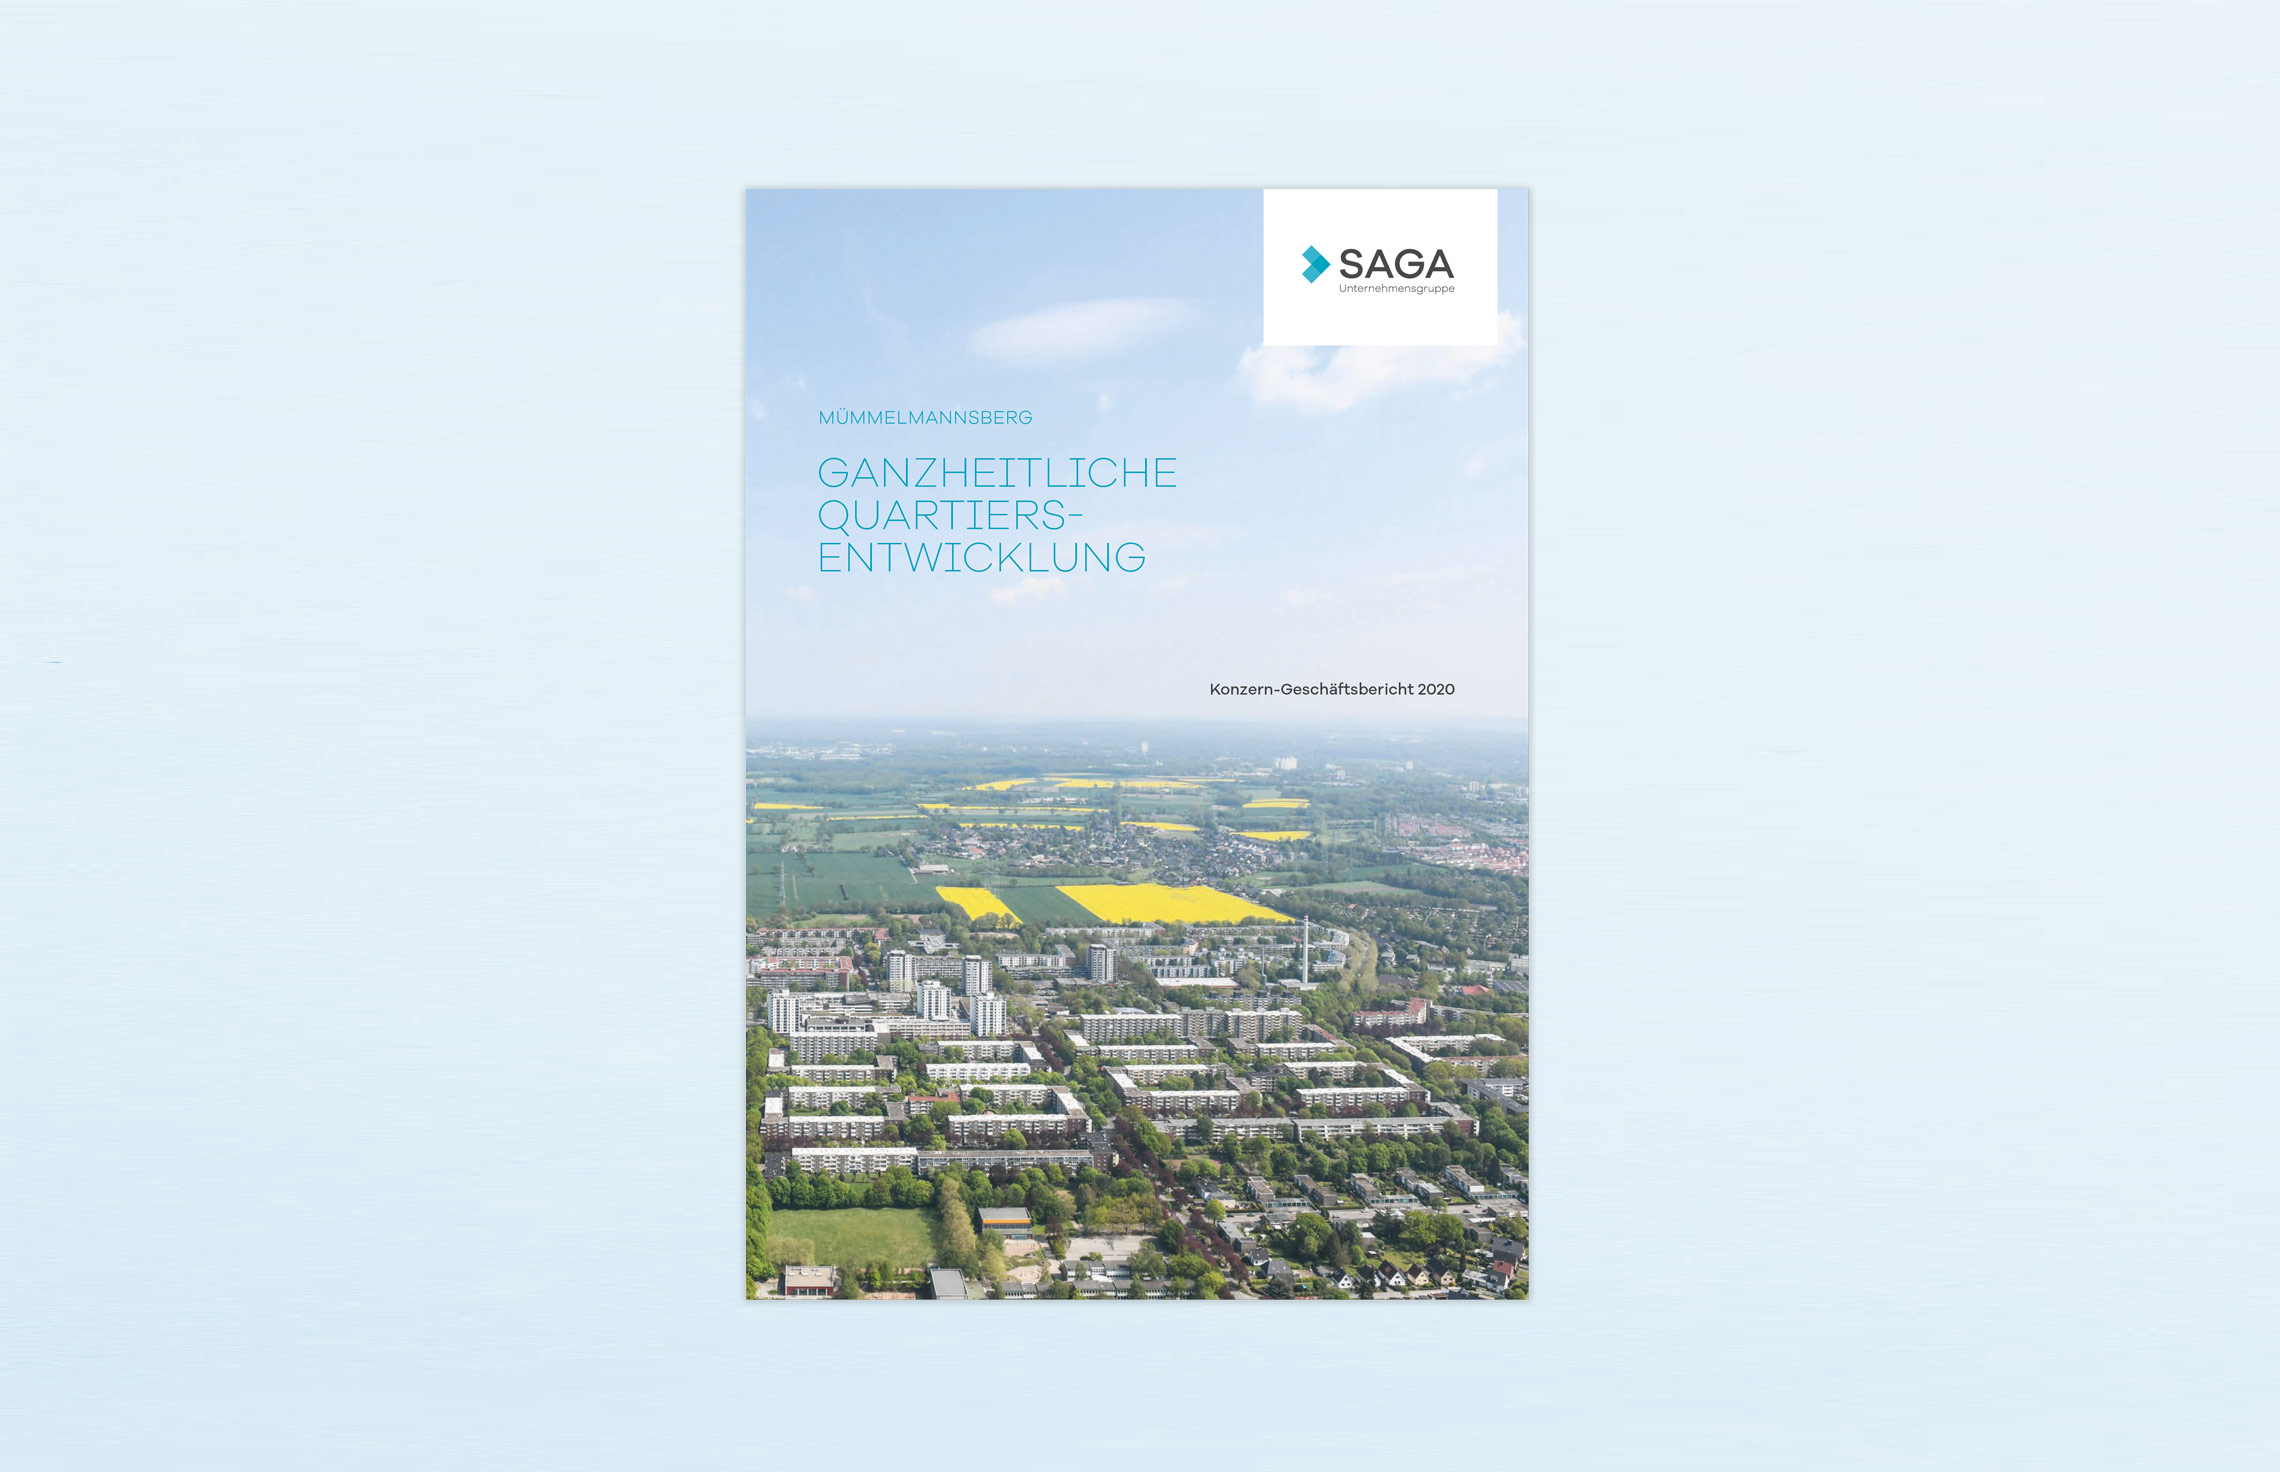 Titel; Geschäftsbericht, Editorial Design, Annual Report; KonzernGeschäftsbericht 2020 der SAGA Unternehmensgruppe, Hamburg, zum Thema ganzheitliche Quartiersentwicklung am Beispiel Mümmelmannsberg; Konzept